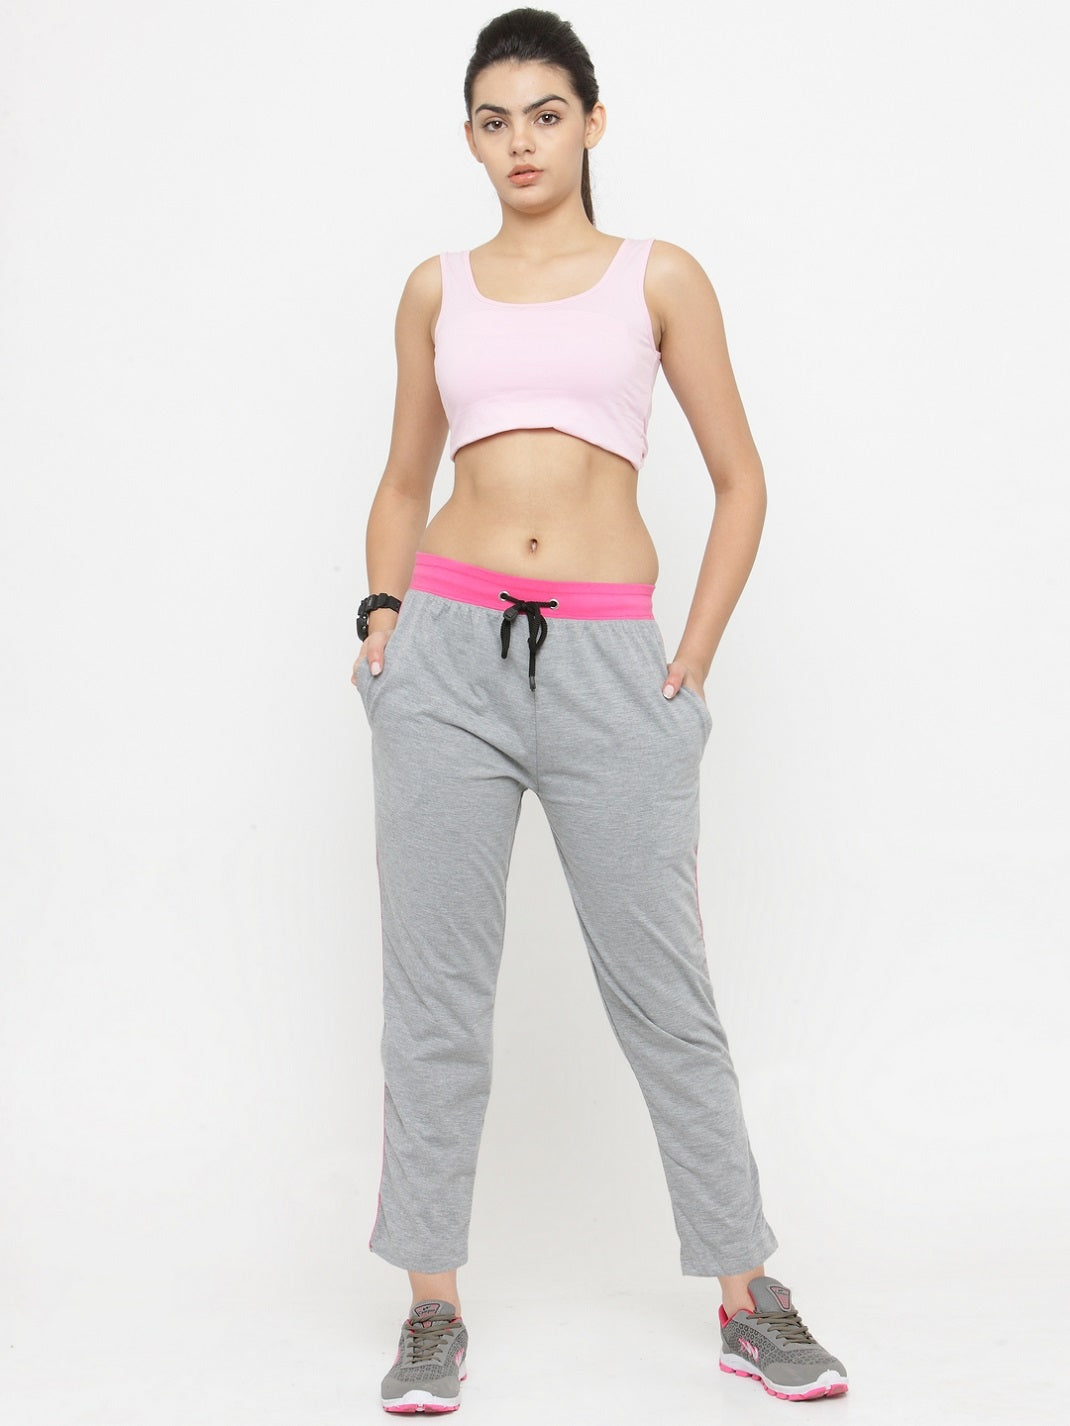 Womens 3/4 Cropped Gym Track Pants Grey Workout Capri | Iron Tanks